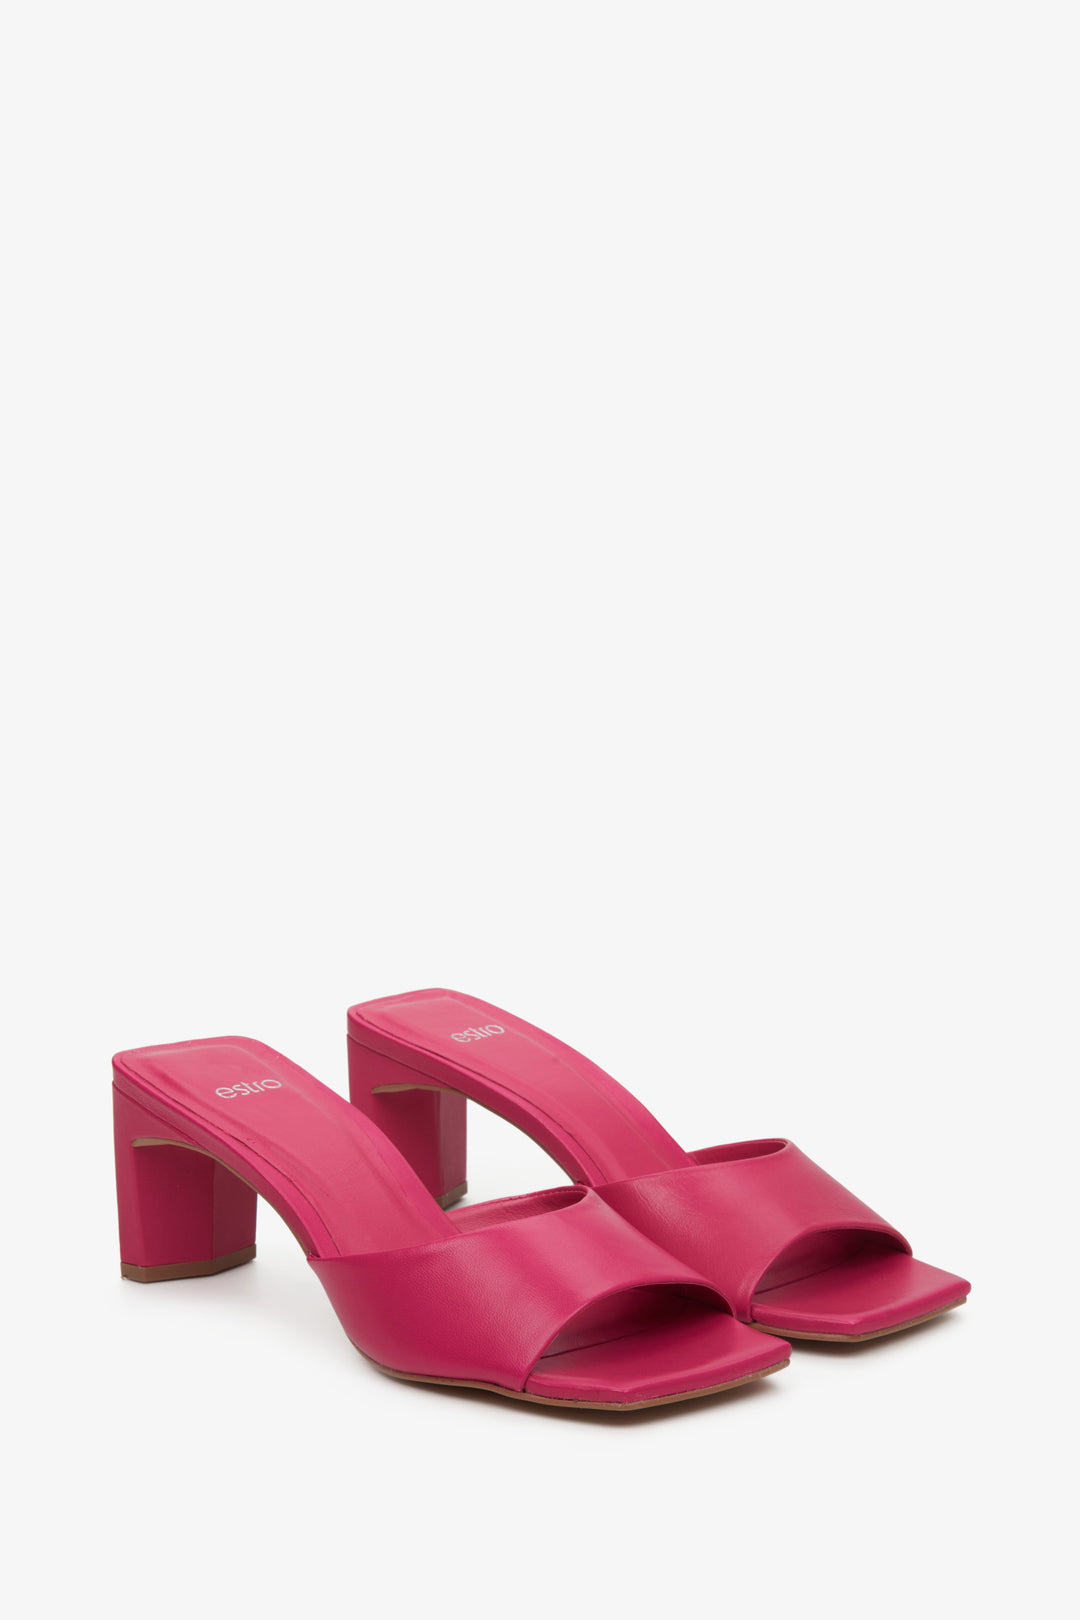 Skórzane, różowe klapki damskie na stabilnym słupku marki Estro - zbliżenie na czubek buta.